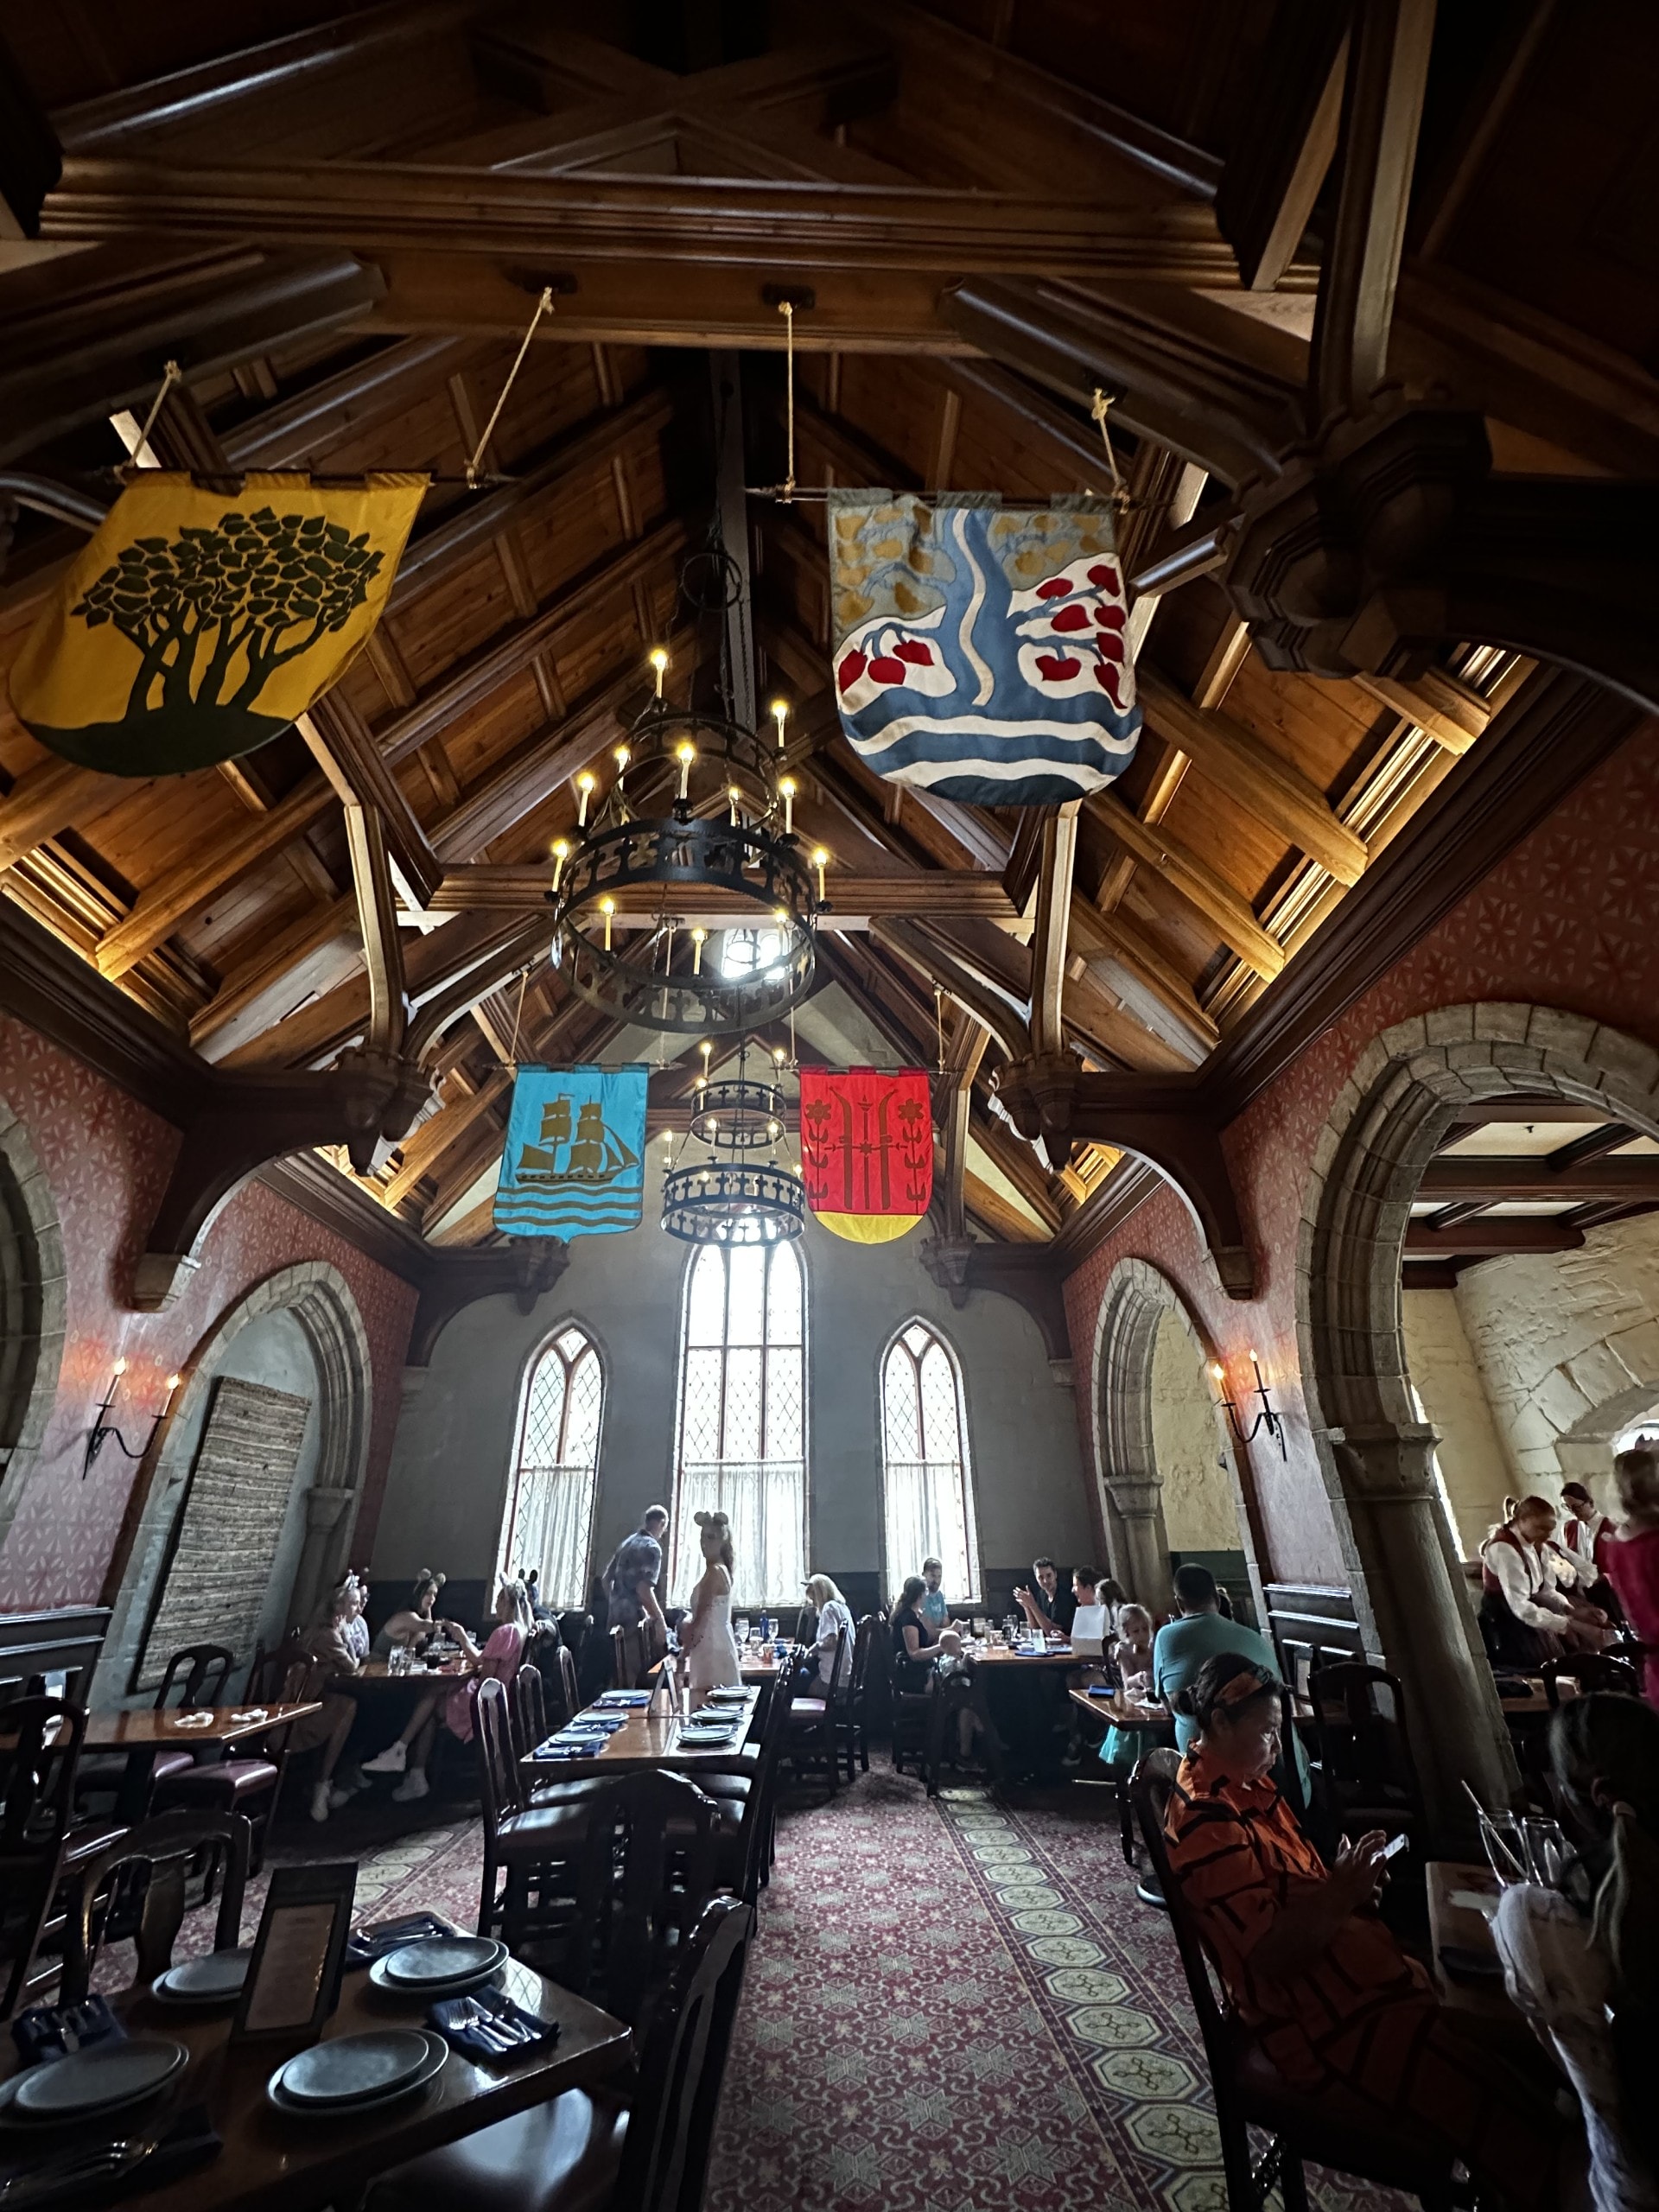 Akershus Royal Banquet Hall: Princess Storybook - Dining Hall